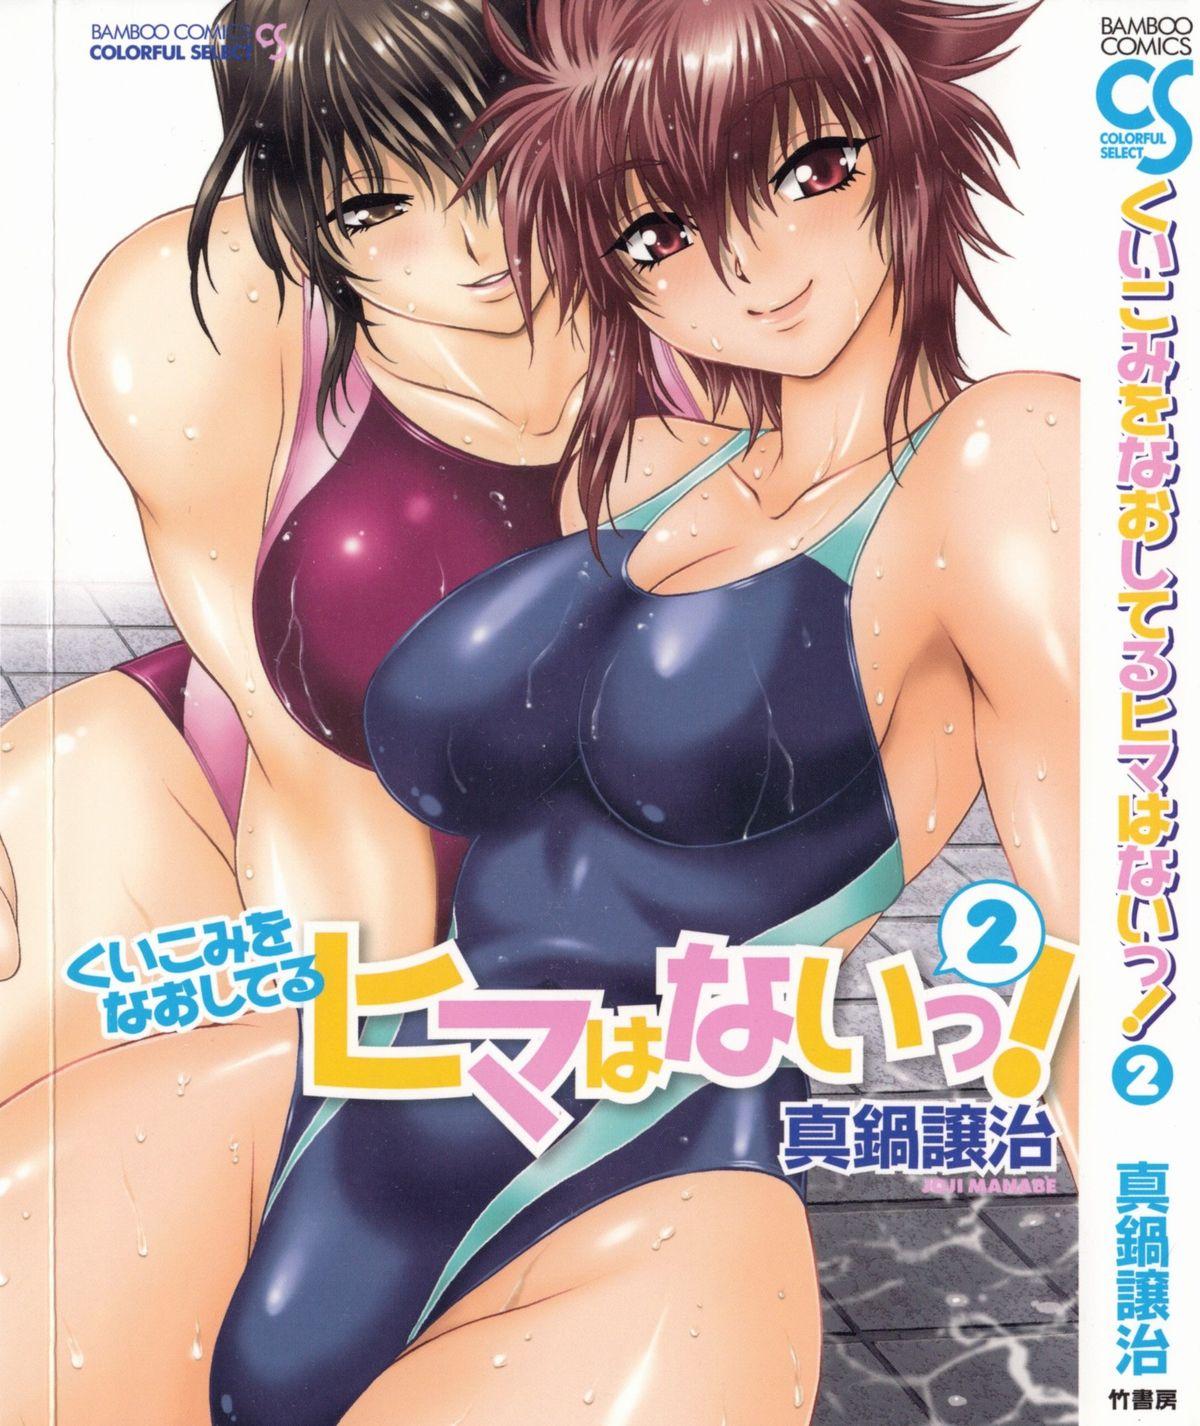 Kuikomi wo Naoshiteru Hima wa Nai! Vol. 2 0